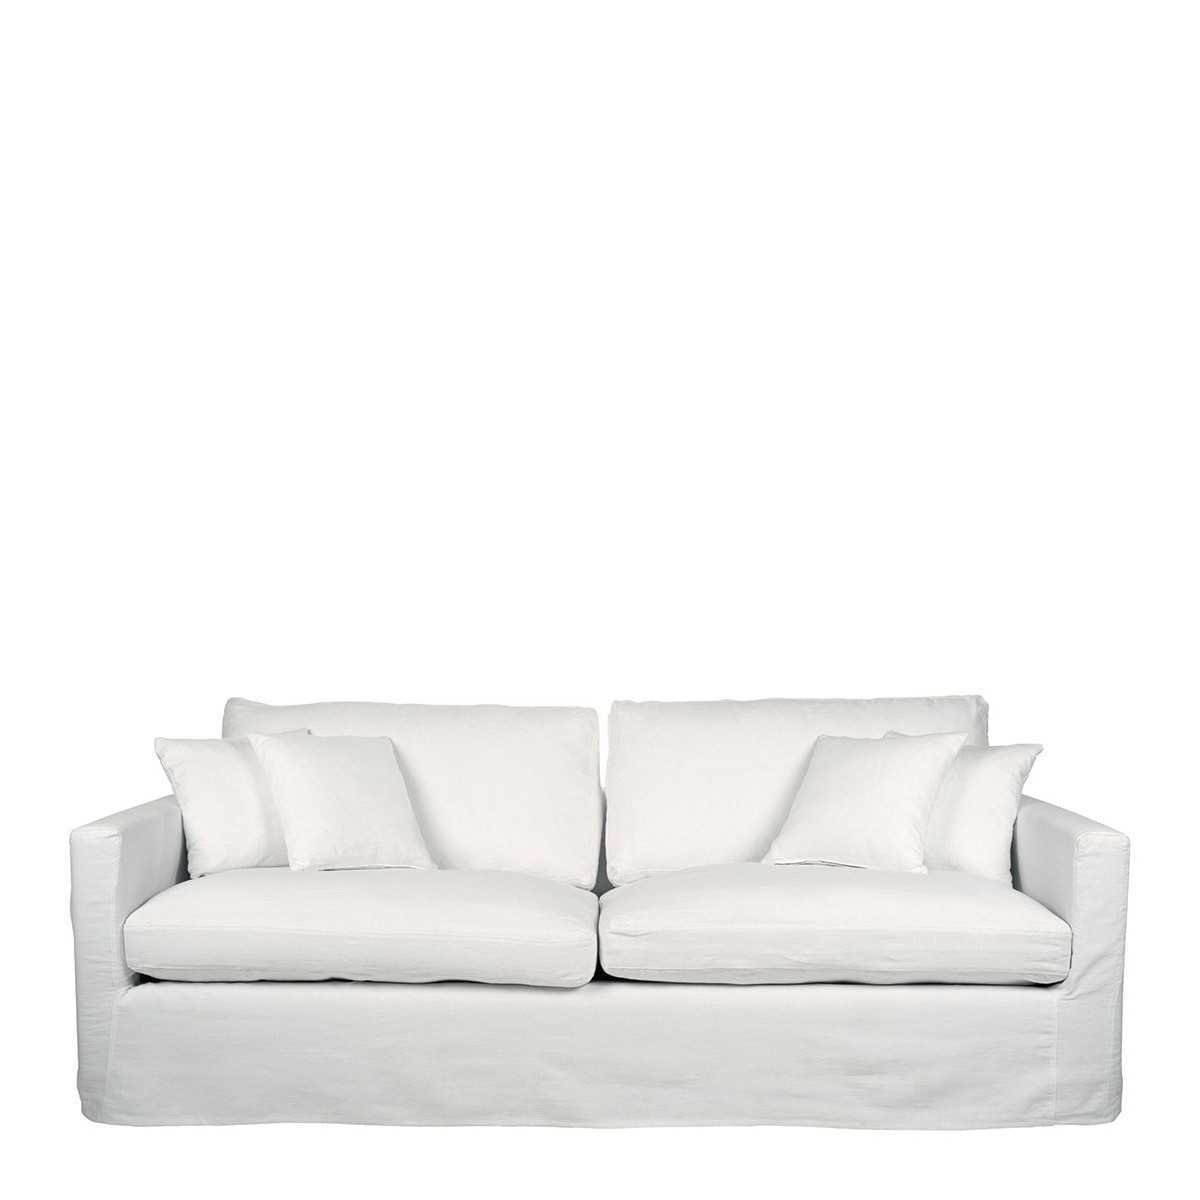 INTERIEUR- DECORATION|Sofa ANGIE linen whiteBLANC D'IVOIRESofas